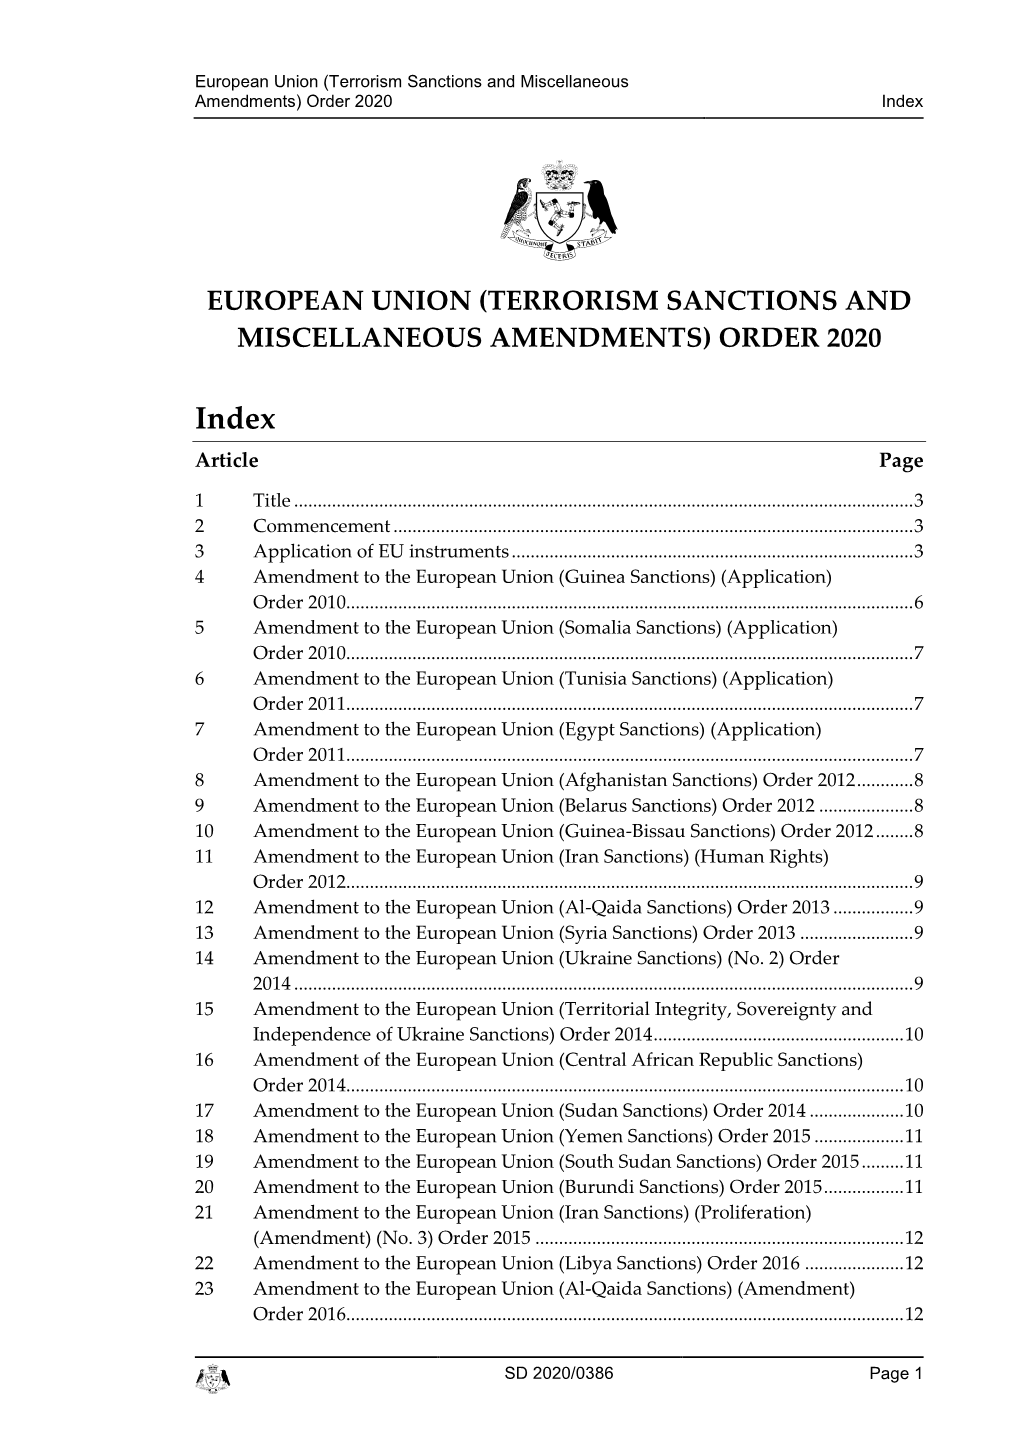 European Union (Terrorism Sanctions and Miscellaneous Amendments) Order 2020 Index